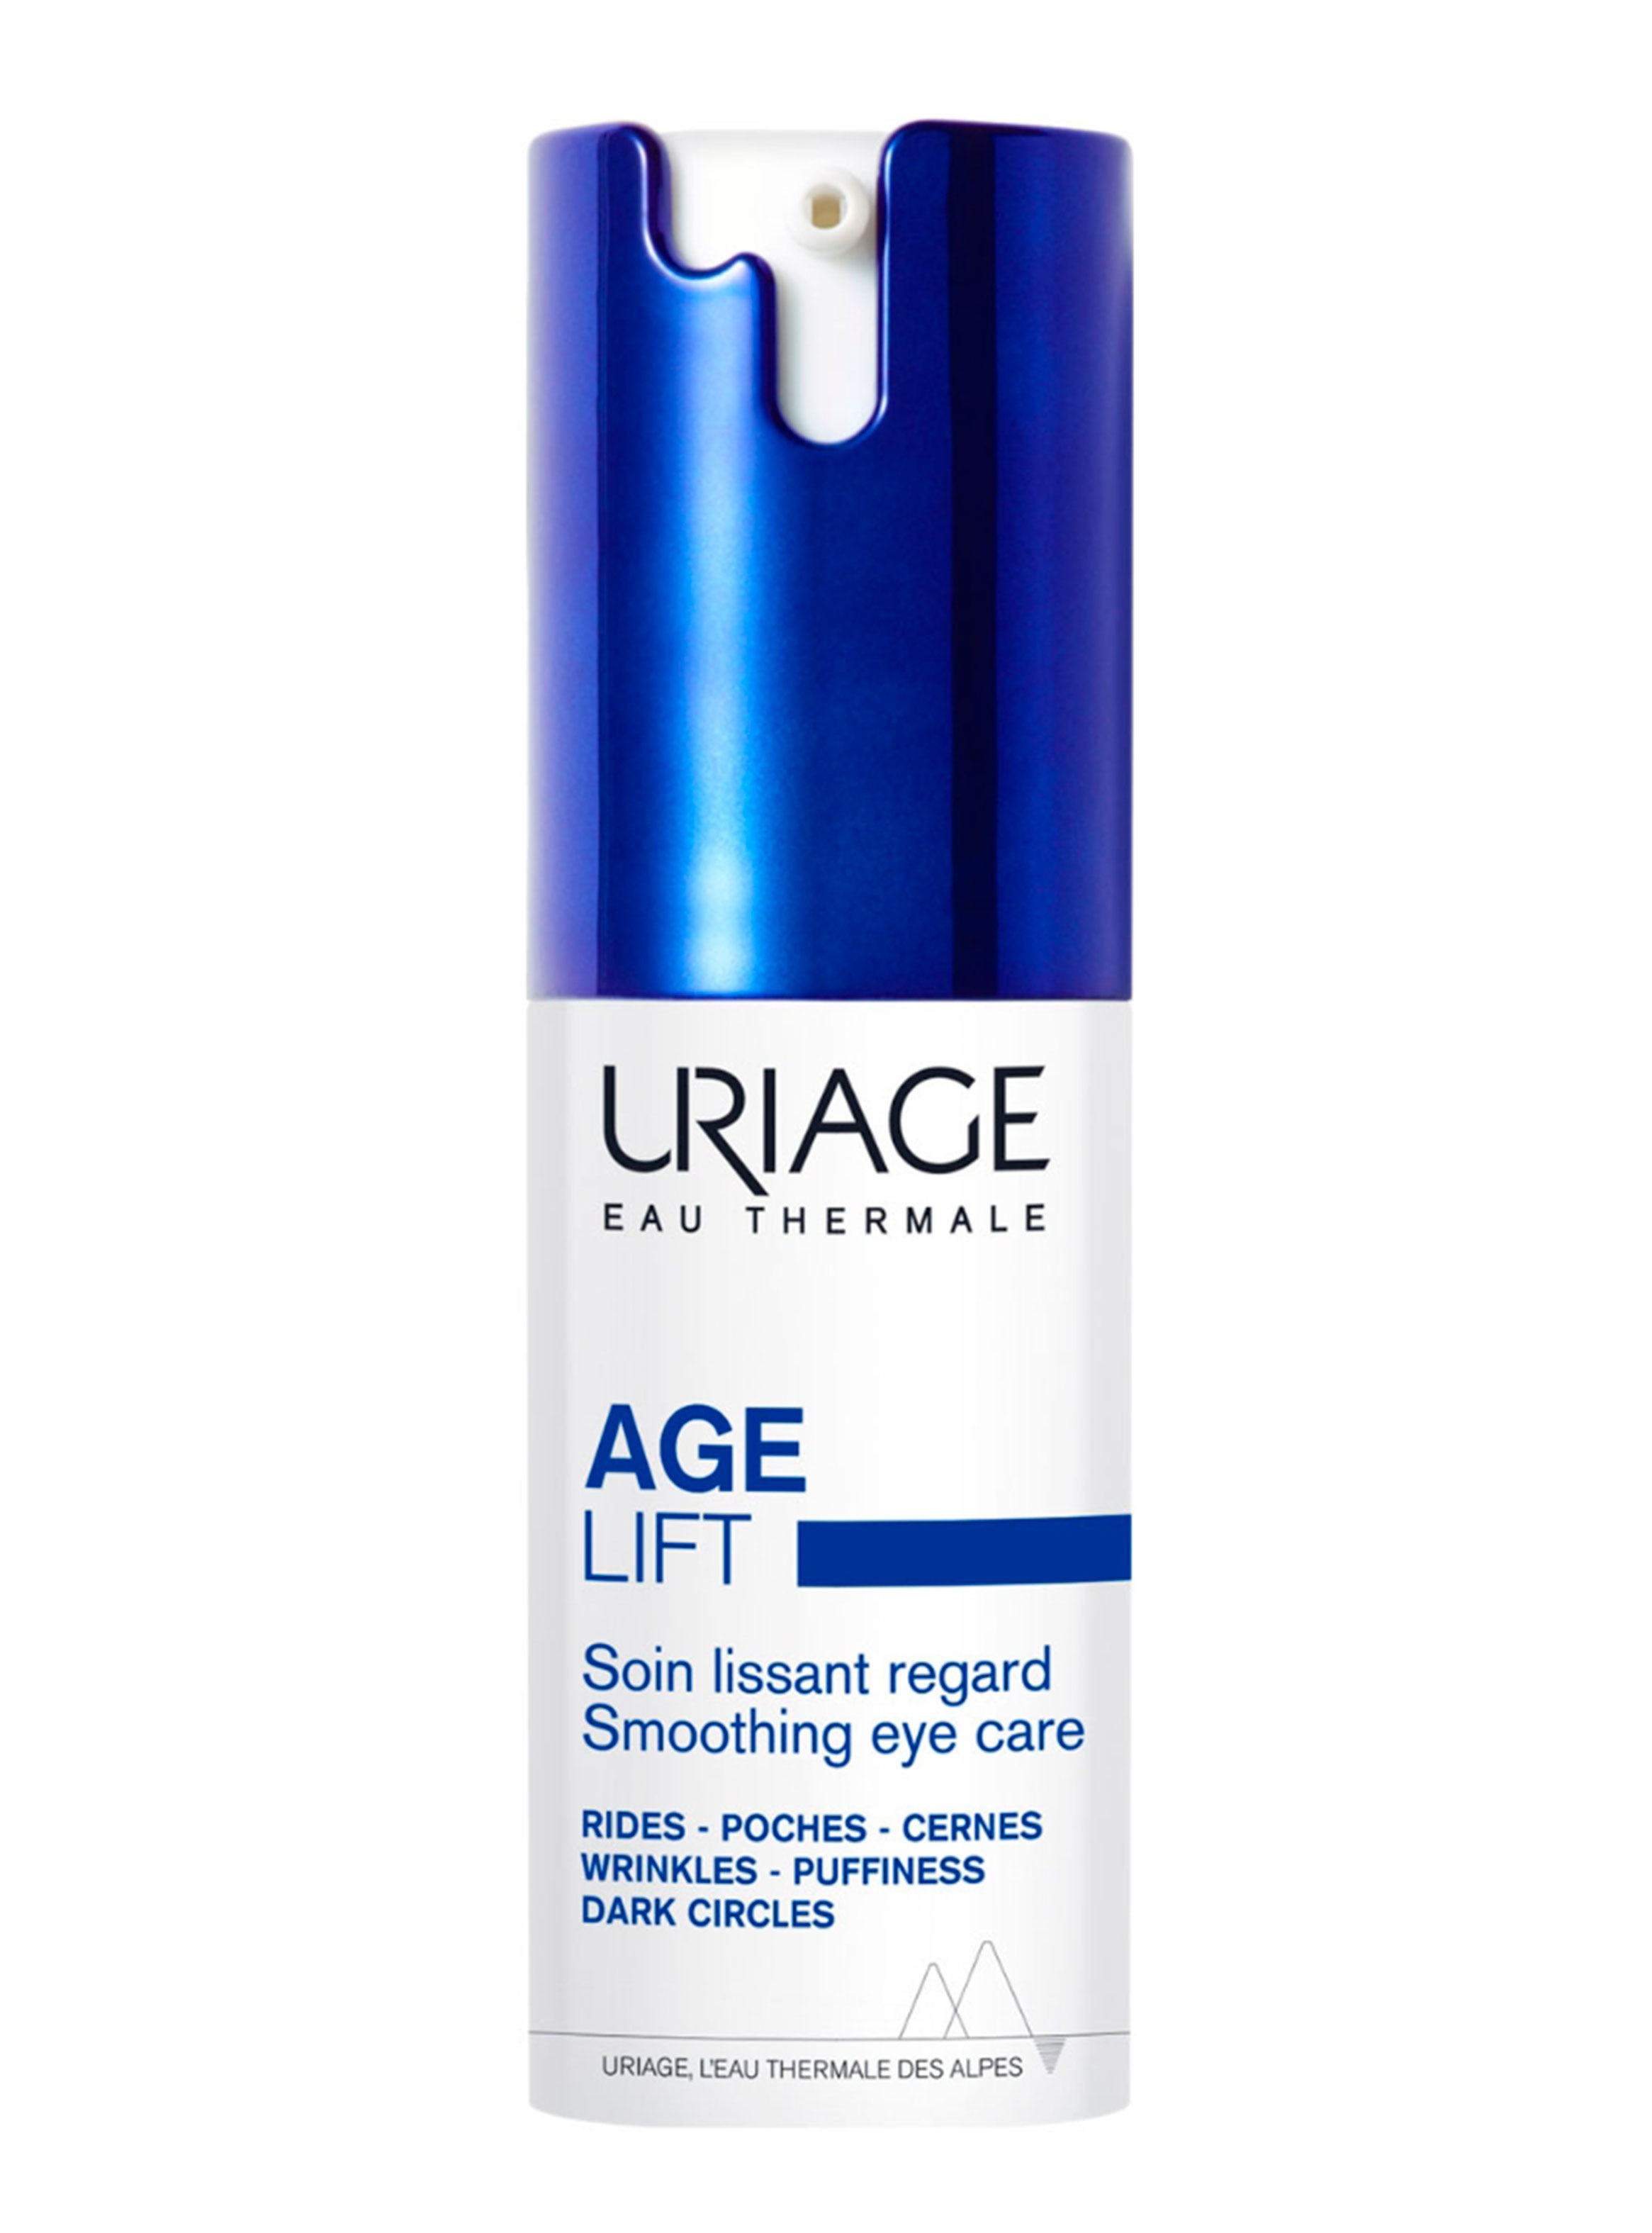 Age Lift Tratamiento Anti-arrugas Contorno de ojos 15ml de Uriage